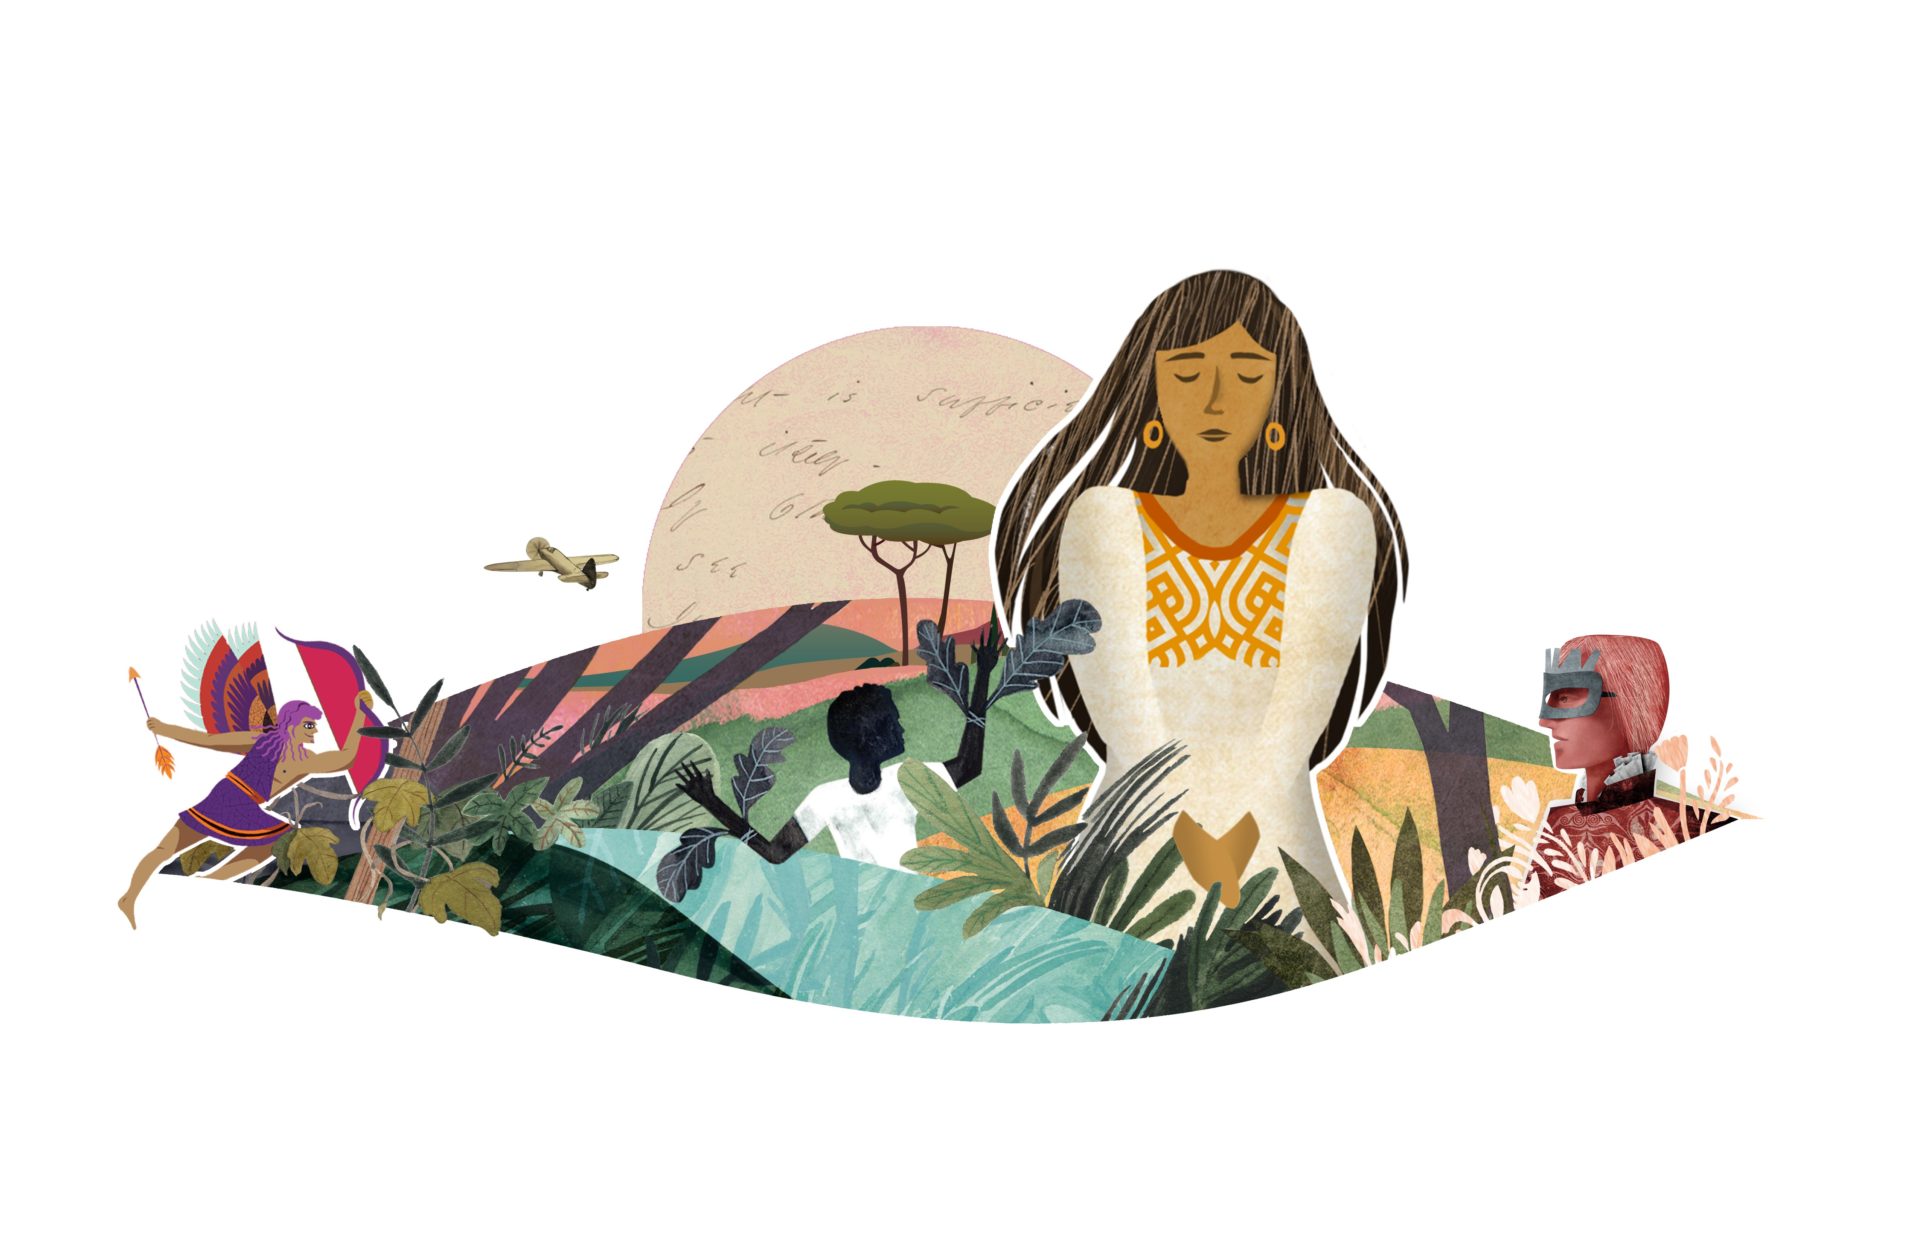 Ilustración de una mujer con un vestido blanco sentada entre diversos elementos como plantas, animales y formas abstractas, con un fondo suave y cálido, diseñado para amplificar el impacto visual.